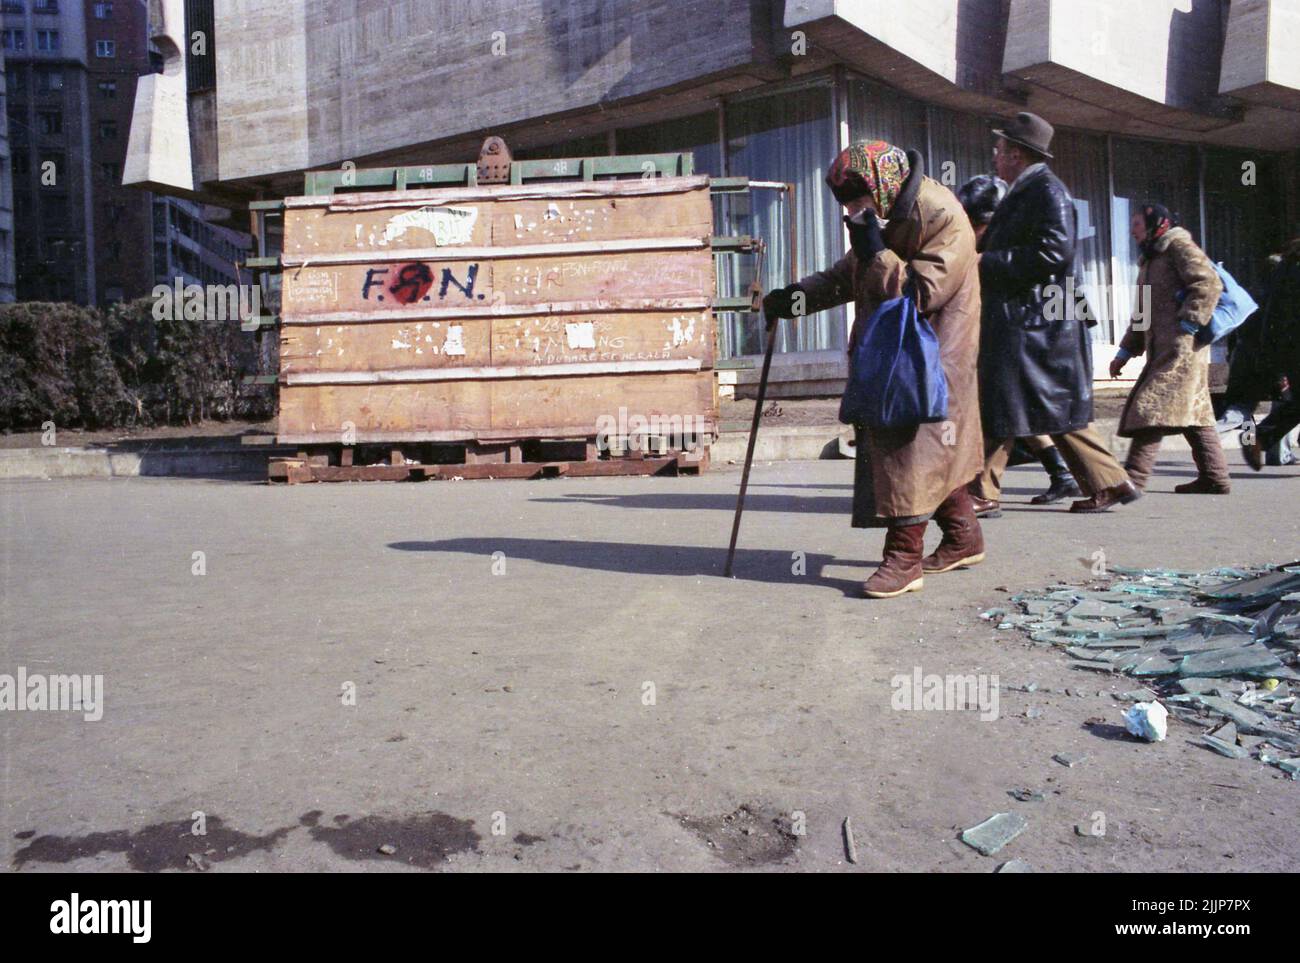 Bucarest, Romania, gennaio 1989. Persone che passano da vetri rotti e detriti in Piazza dell'Università, dall'Intercontinental Hotel, giorni dopo la rivoluzione anti-comunista del dicembre 1989. Una donna anziana sta coprendo il suo volto con un fazzoletto. Sul pannello di legno qualcuno ha scritto 'F.S.N.' (Fronte di salvezza nazionale - il partito che afferrò il potere dopo che Ceausescu fu eliminato), con il martello comunista e la falce in esso, accennando all'inclinazione del partito. Foto Stock